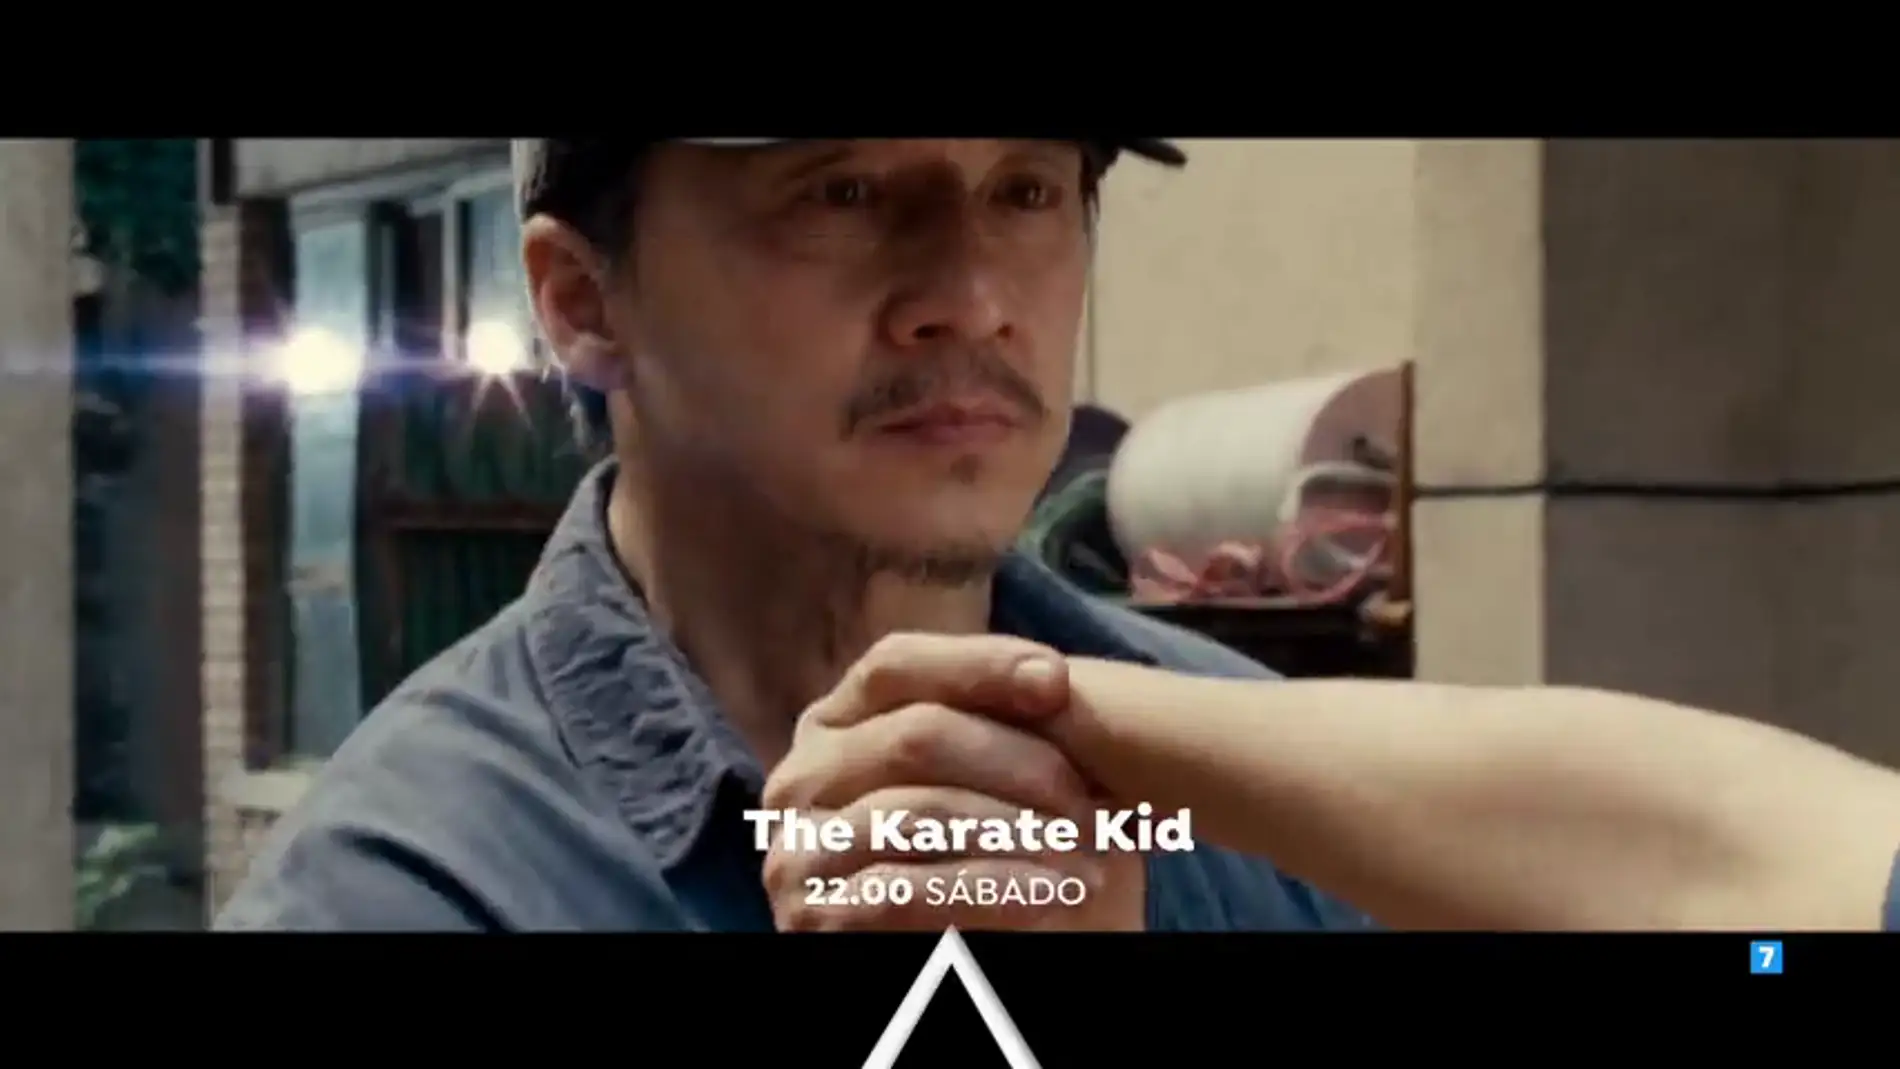 Cine de acción y aventuras en El Peliculón con 'The karate kid'